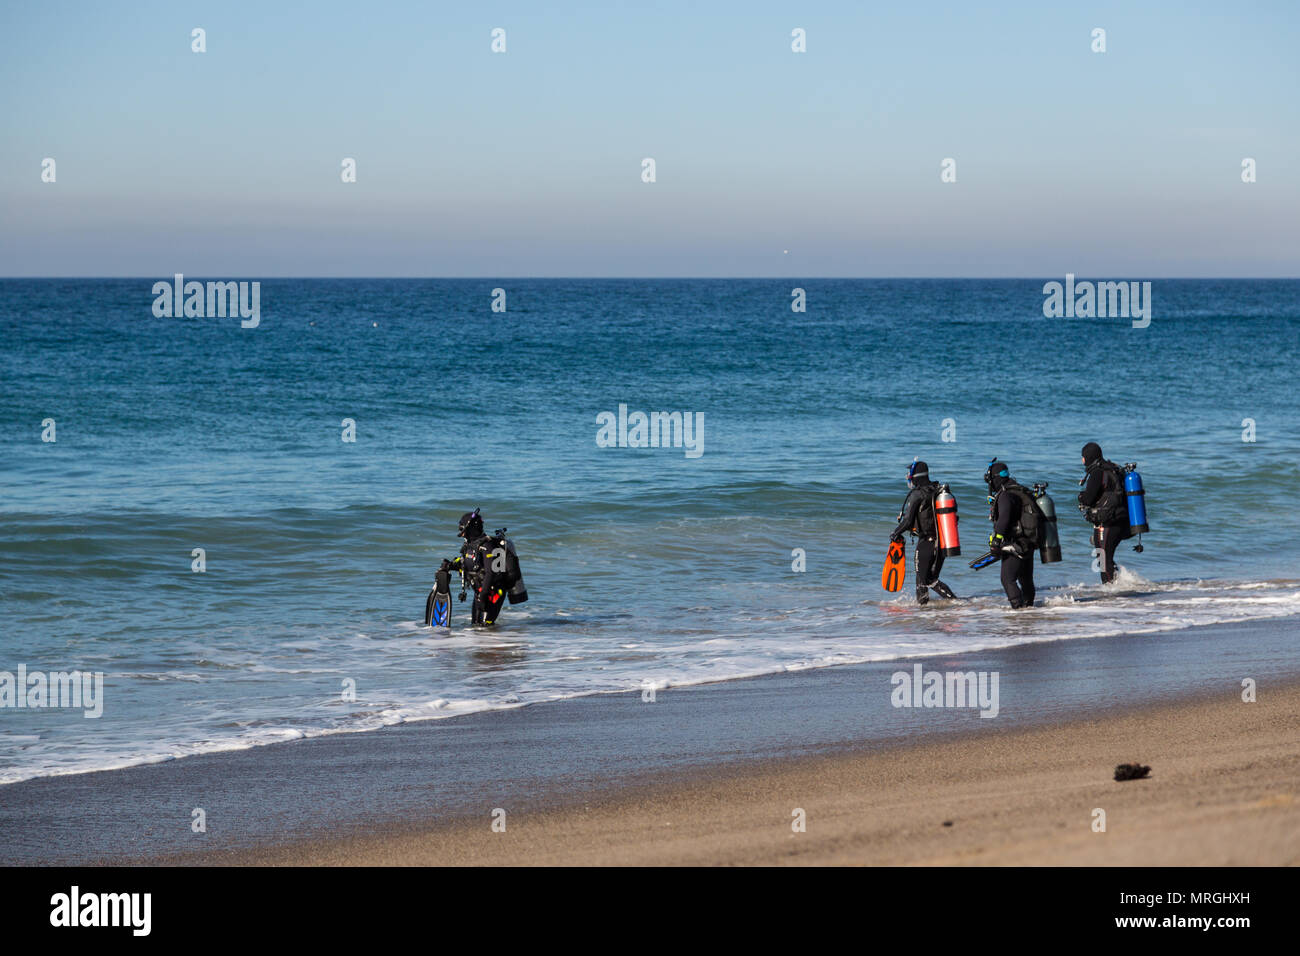 Un groupe de plongeurs entre dans l'eau pour une plage plongée (plongée du rivage) à Malibu, en Californie. Banque D'Images